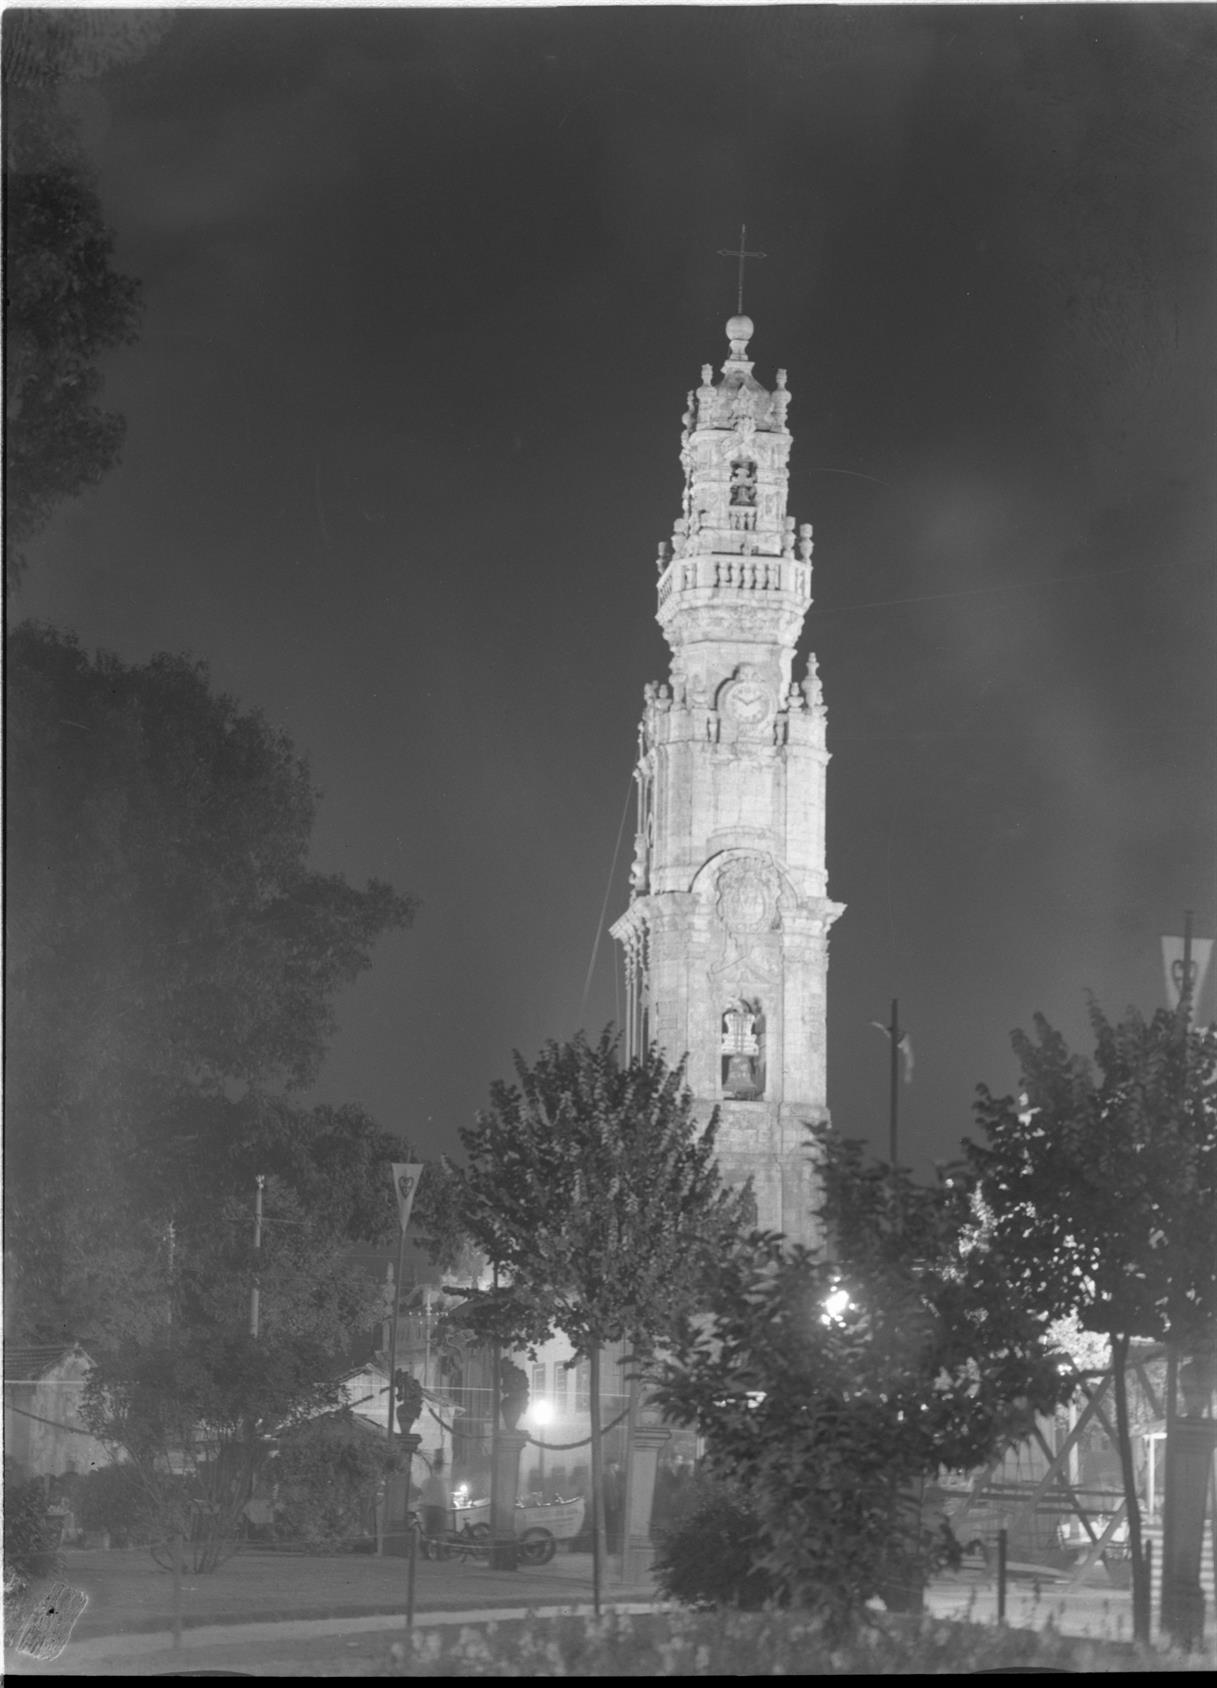 Torre dos Clérigos